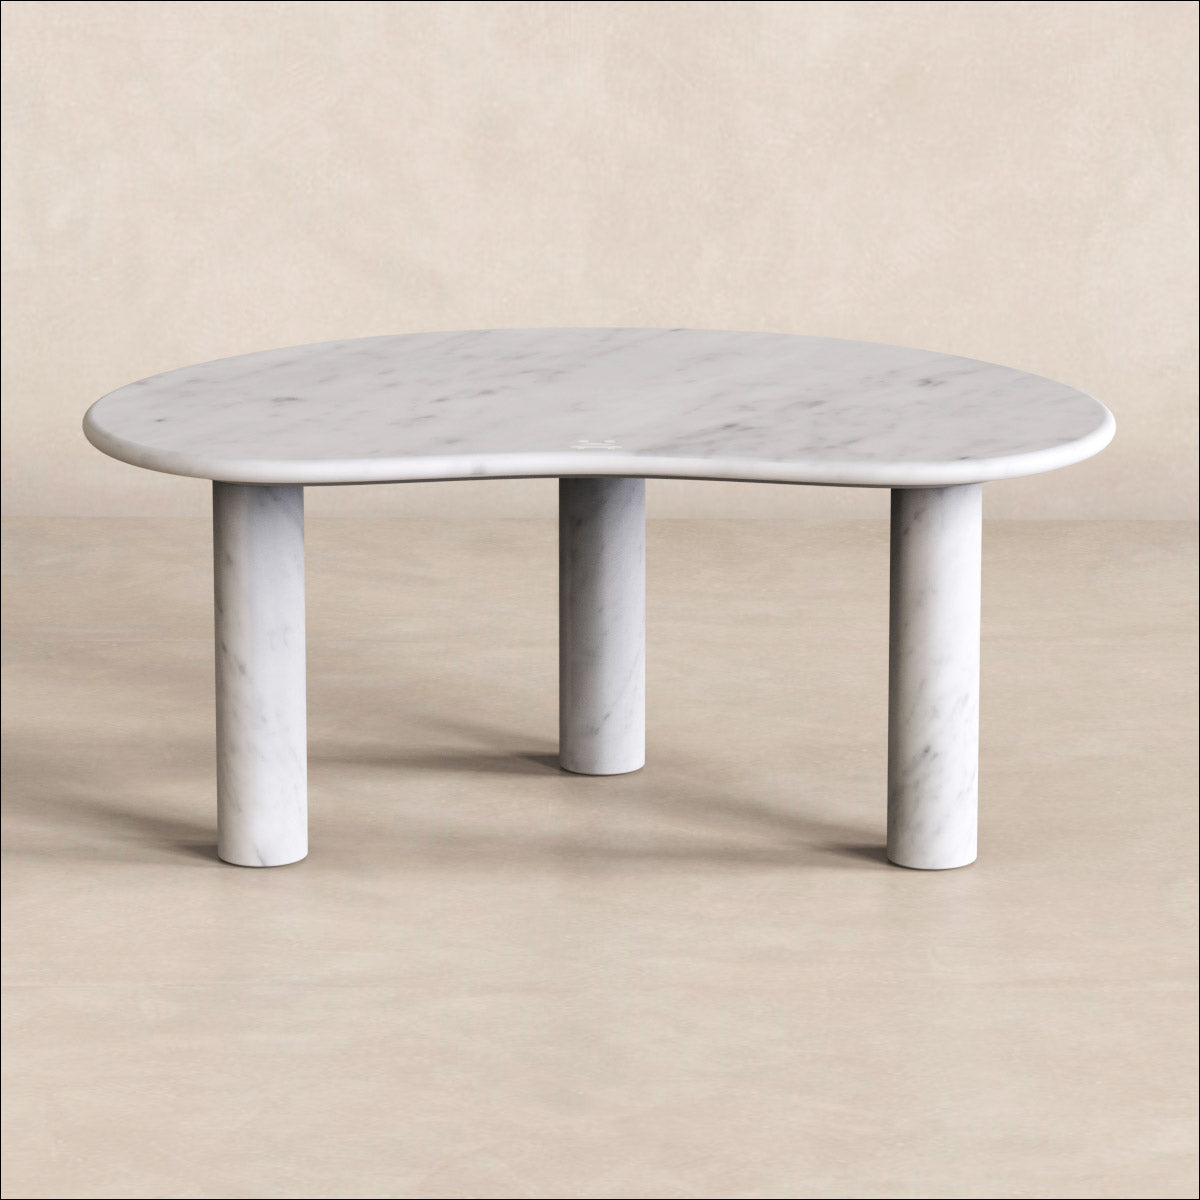 OIXDESIGN PeaPod Coffee Table, Italian Carrara Marble, Micro Scene Graph, Front View